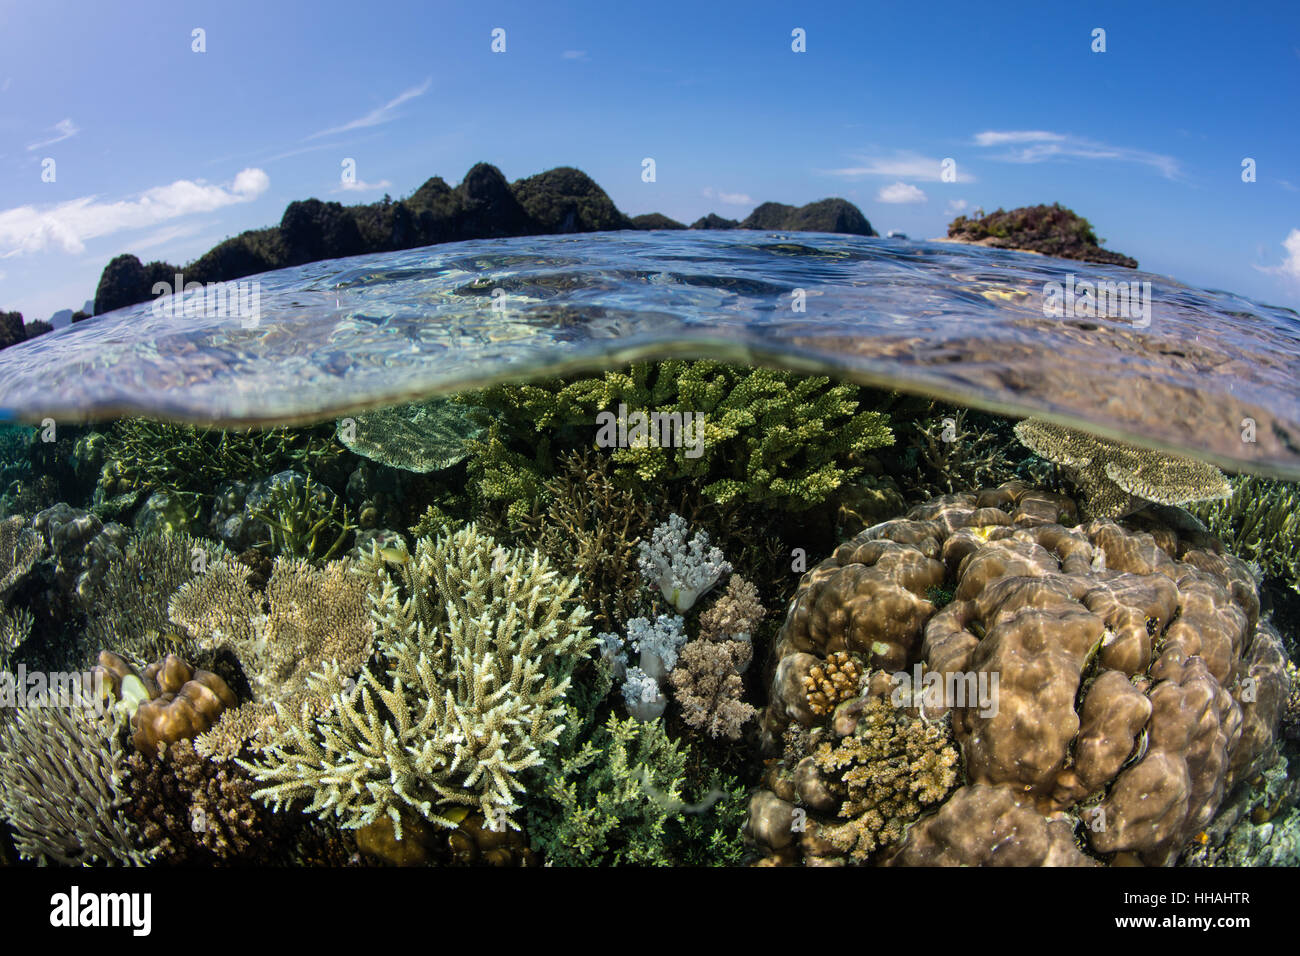 Einem schönen Korallenriff gedeiht in Raja Ampat, Indonesien. Diese artenreichen Region bekannt als das Herzstück der Coral Triangle. Stockfoto